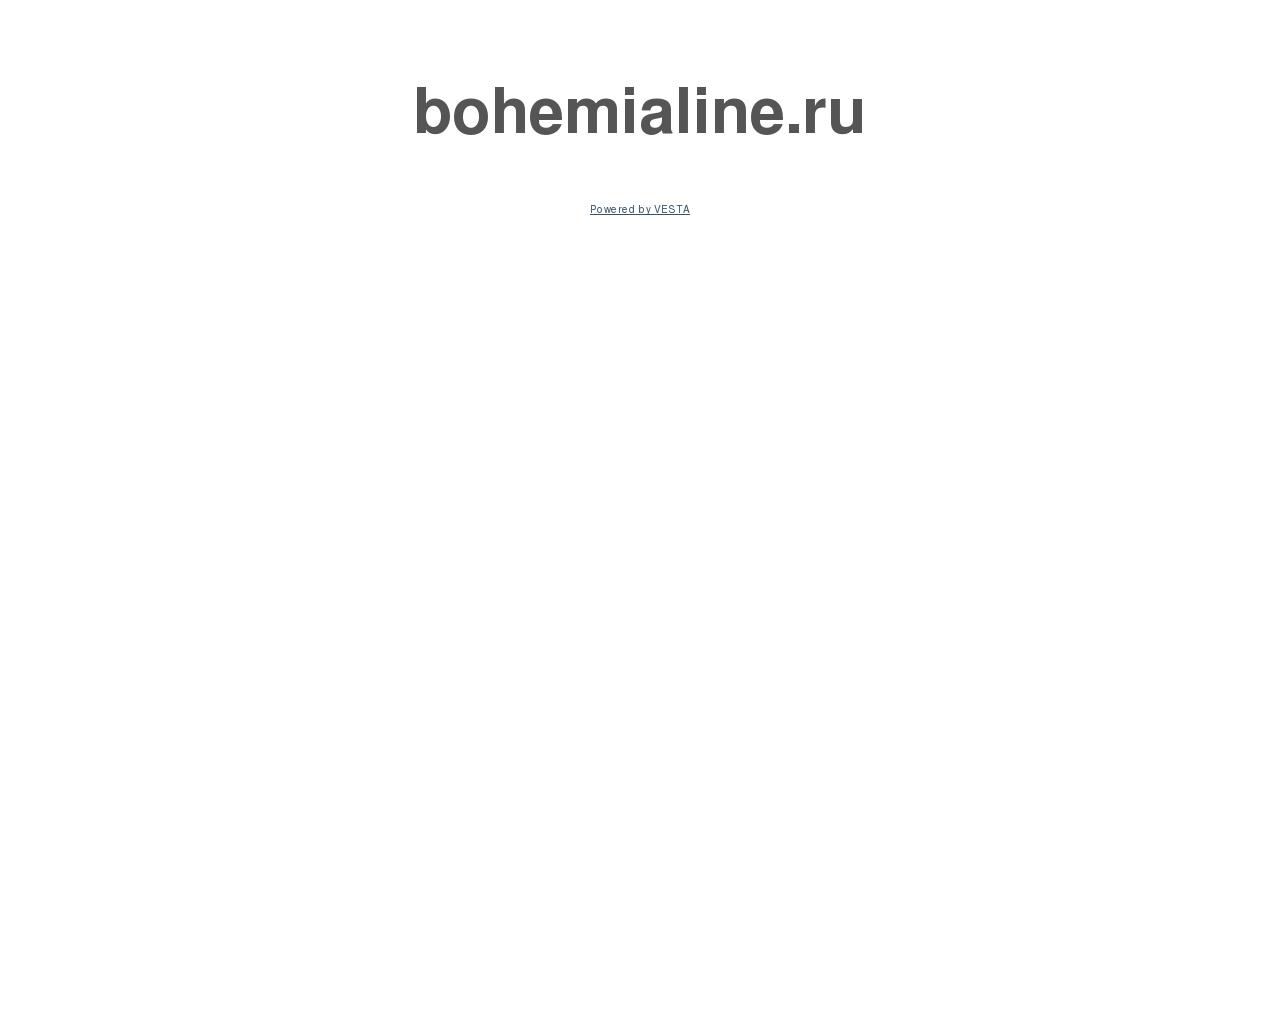 Изображение сайта bohemialine.ru в разрешении 1280x1024